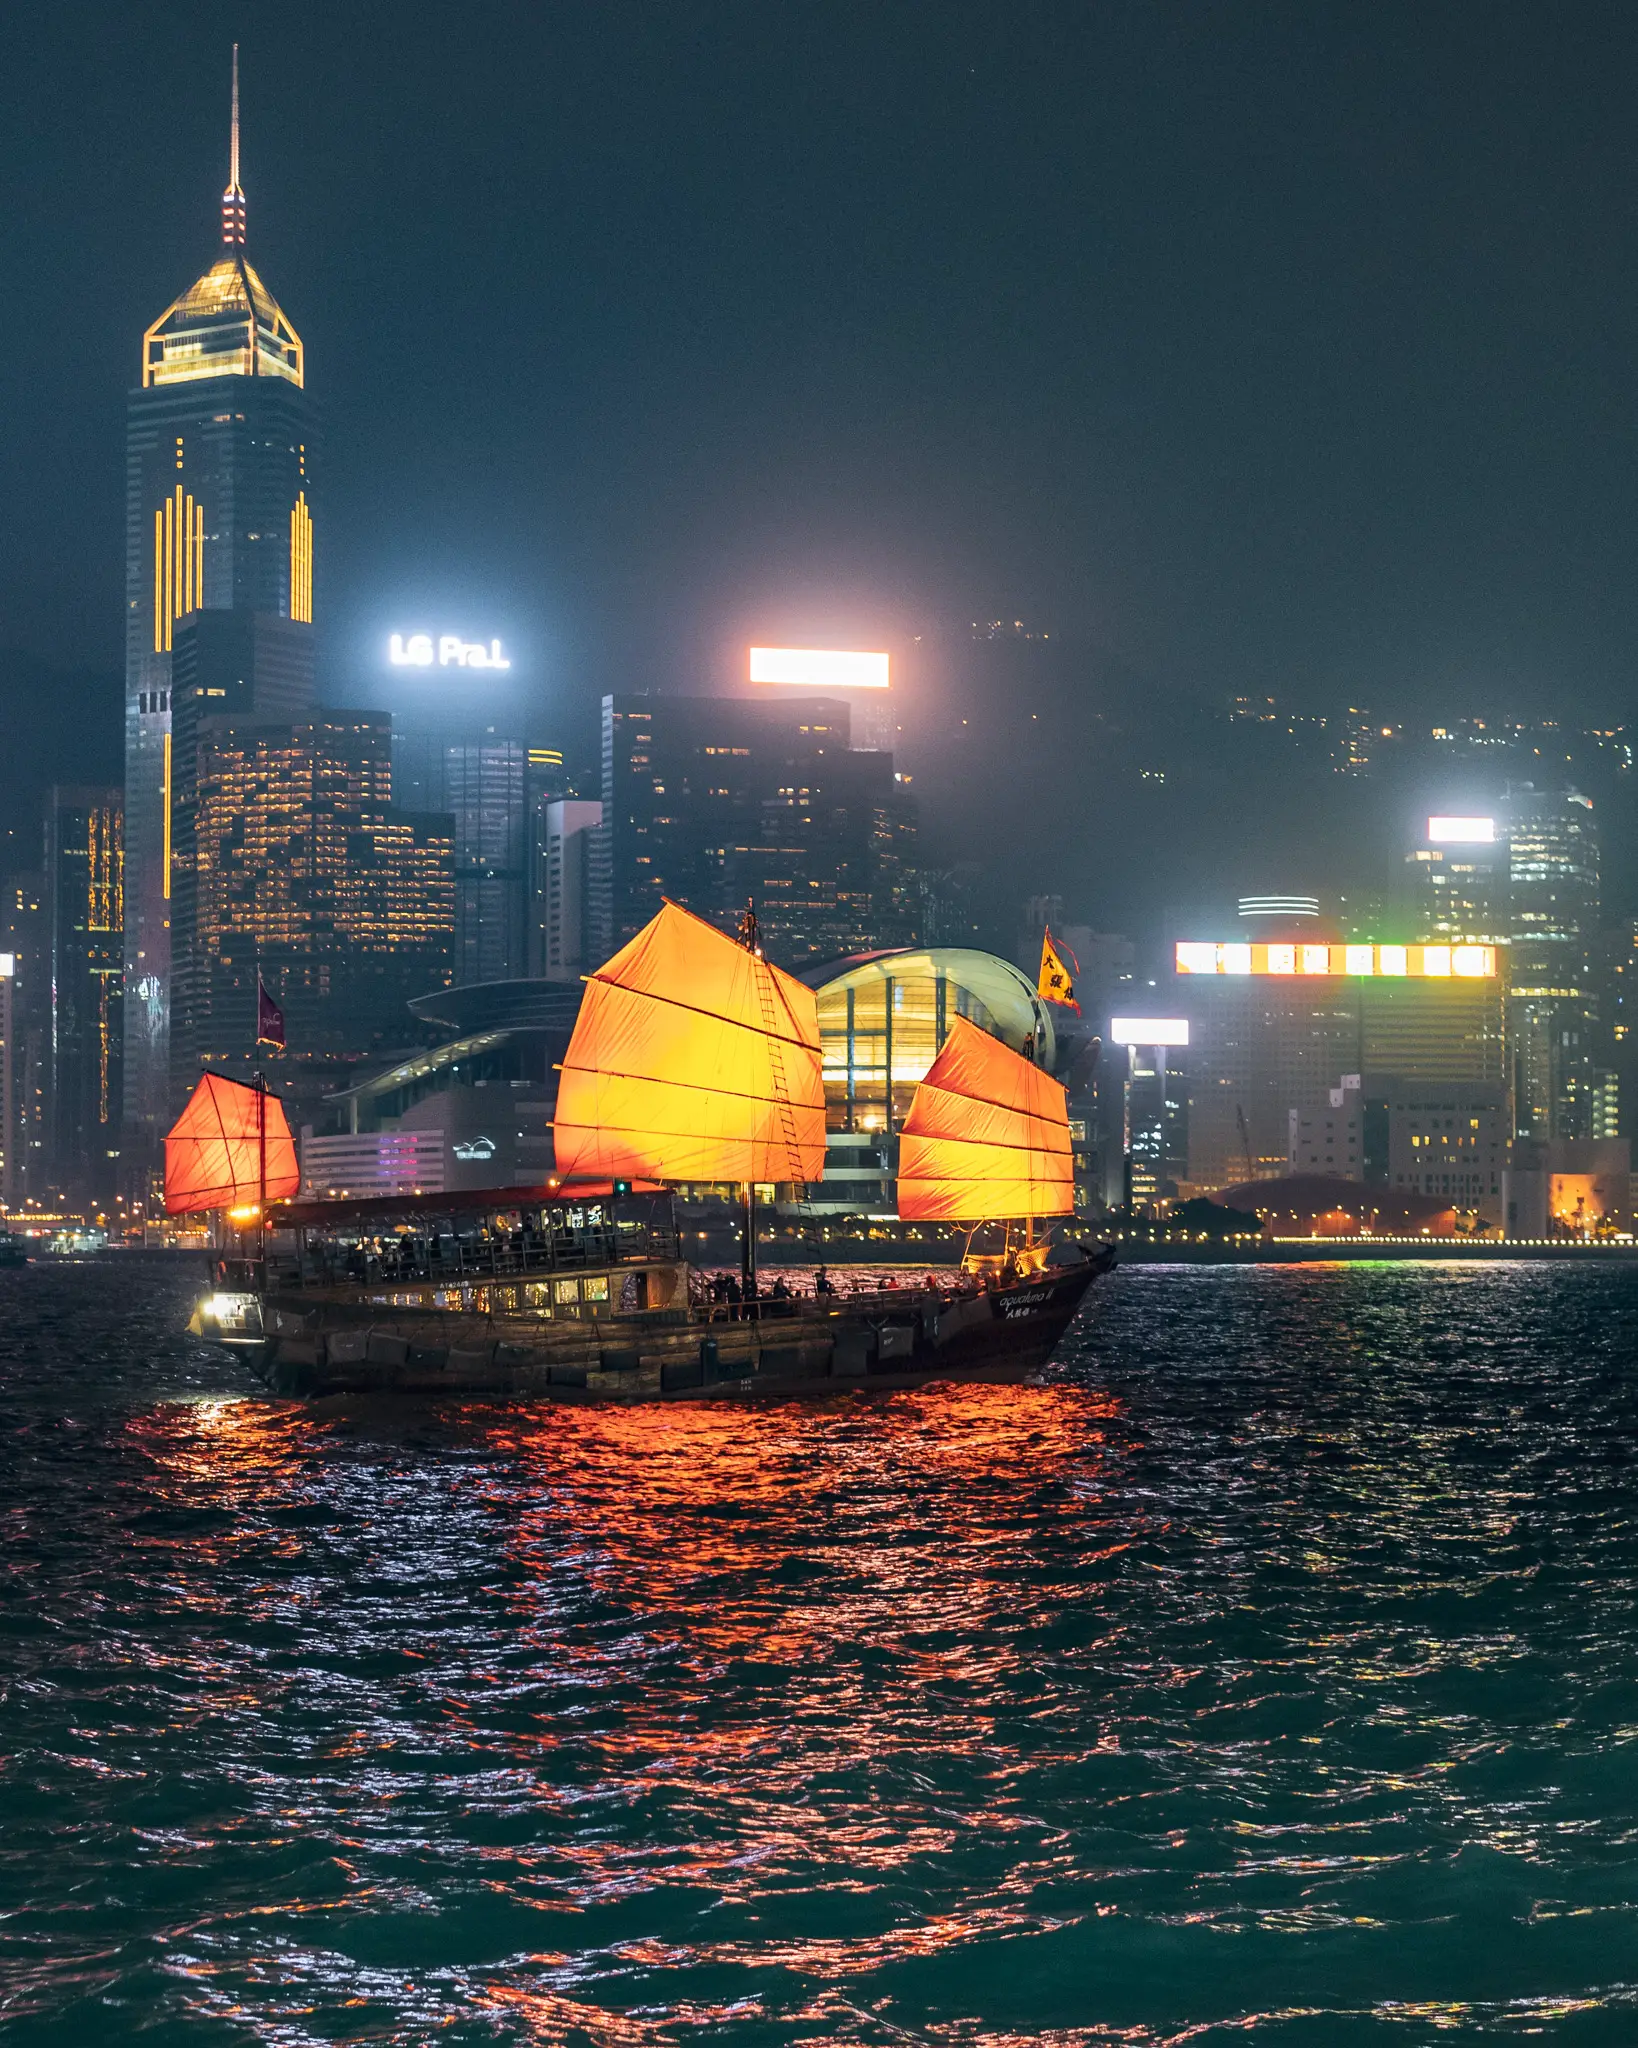 Hong Kong junk boat and skyline at night